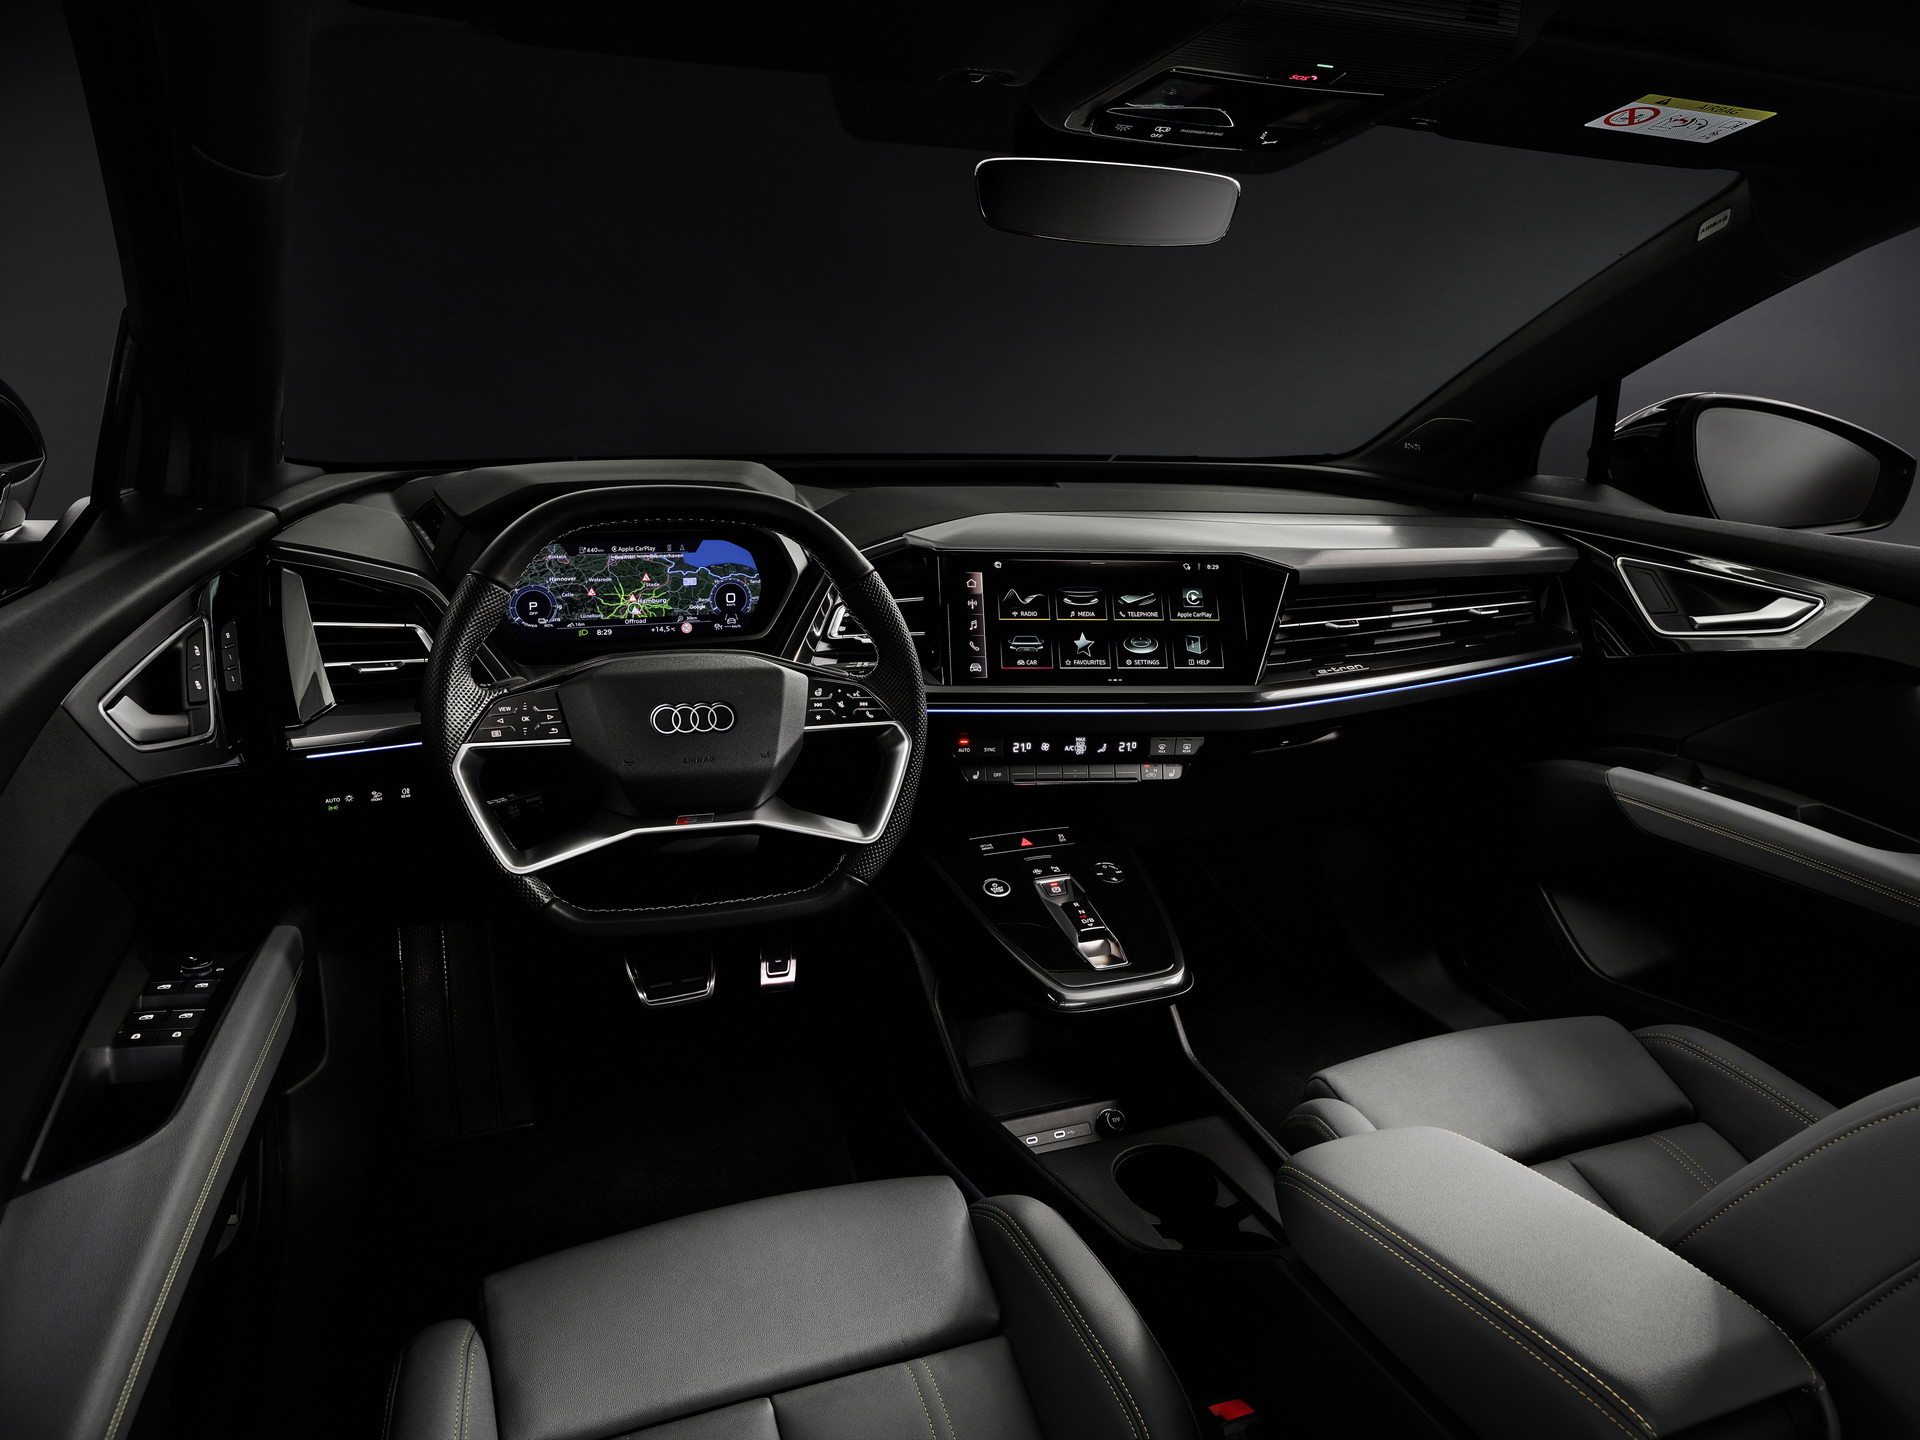 Immagine interni nuova Audi Q4 e tron